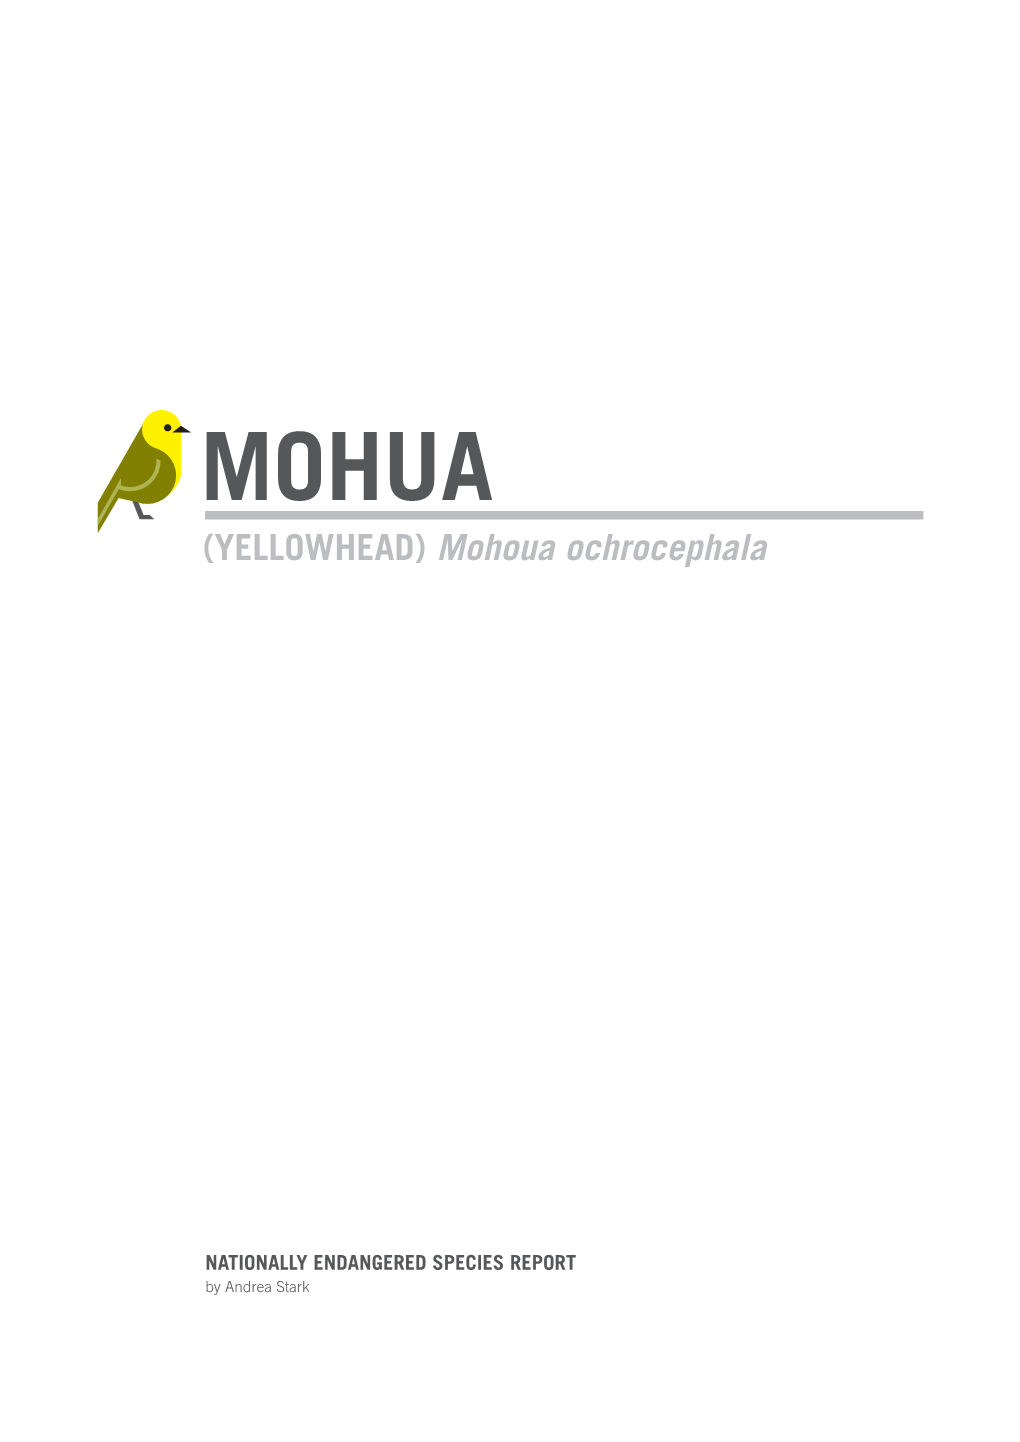 (Yellowhead) Mohoua Ochrocephala